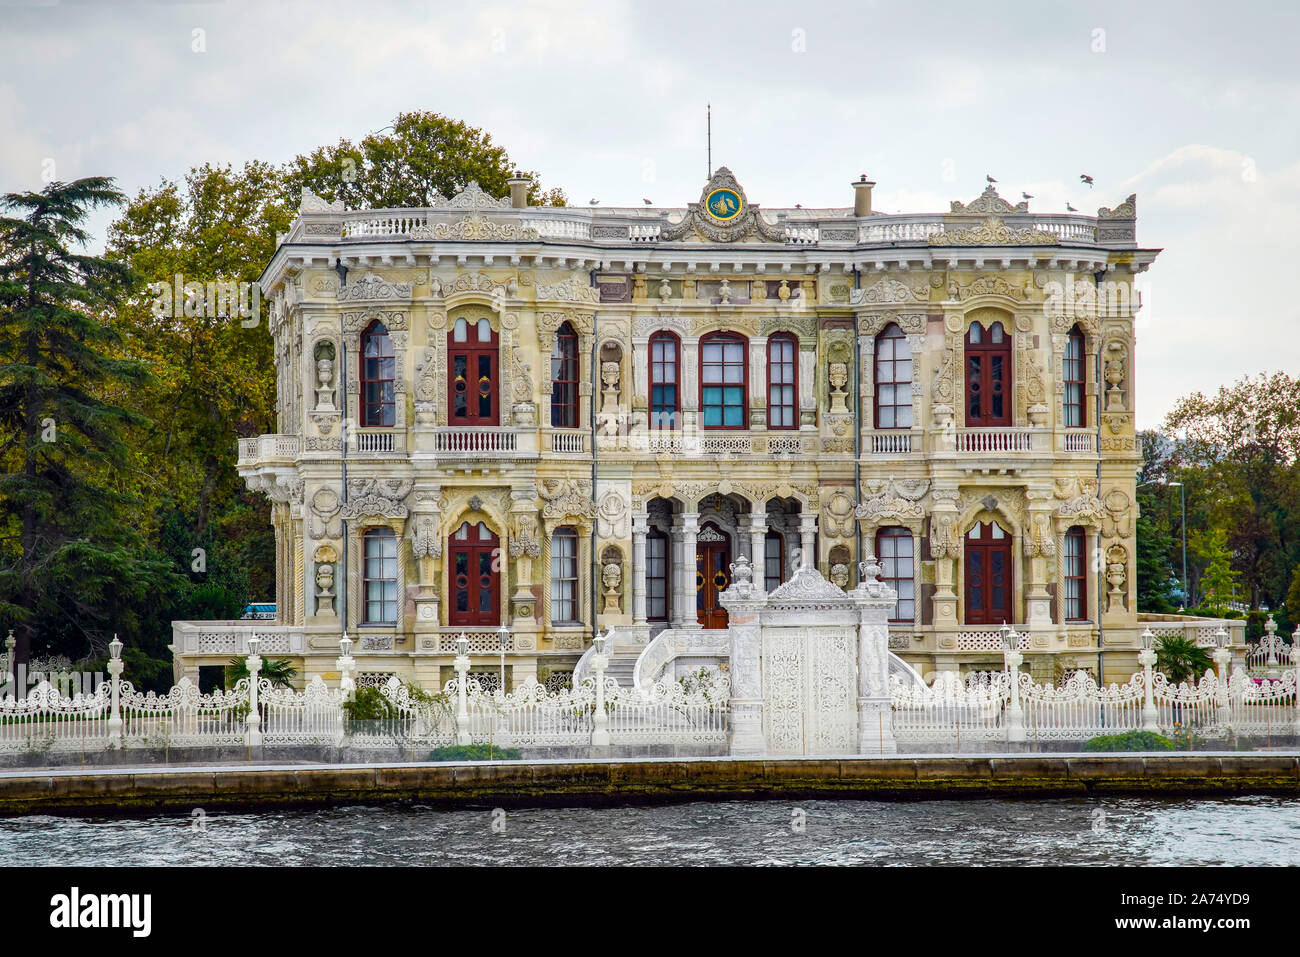 Palast der Küçksu, Barock, auf der asiatischen Bank auf die Meerenge des Bosporus, Istanbul, Türkei. Stockfoto